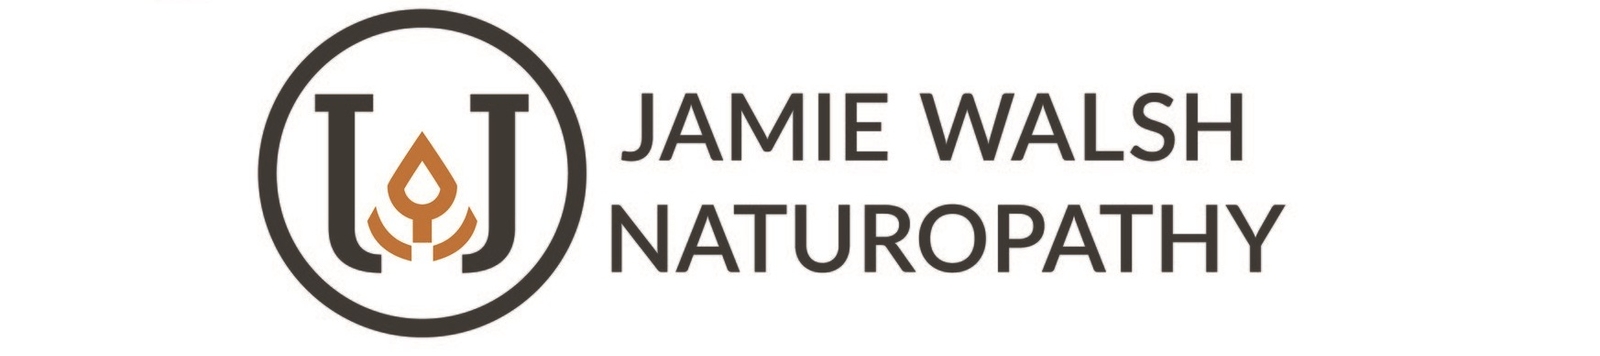 Jamie Walsh Naturopathy